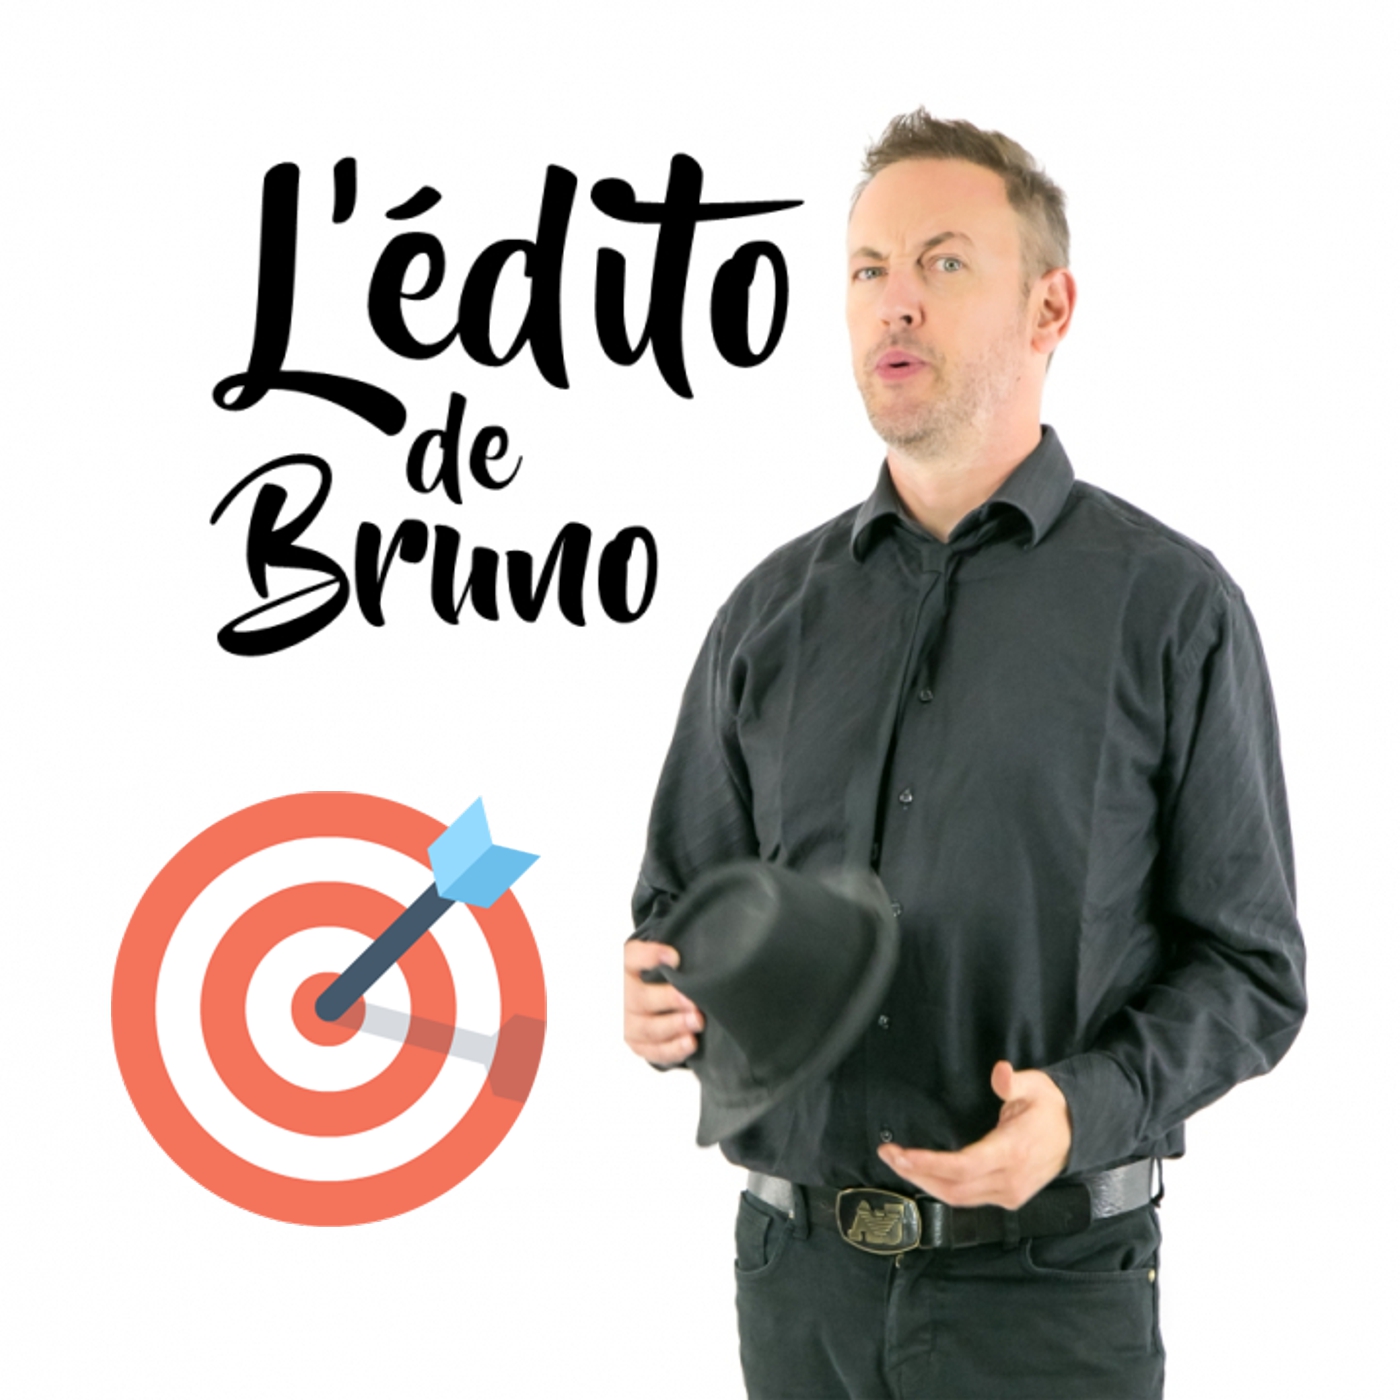 L'Edito de Bruno pour Topette! du 30 06 2022 L'édito de Bruno de l'émission Tendance à m'plaire sur Radio G! L'Edito de Bruno pour Topette! du 30 06 2022